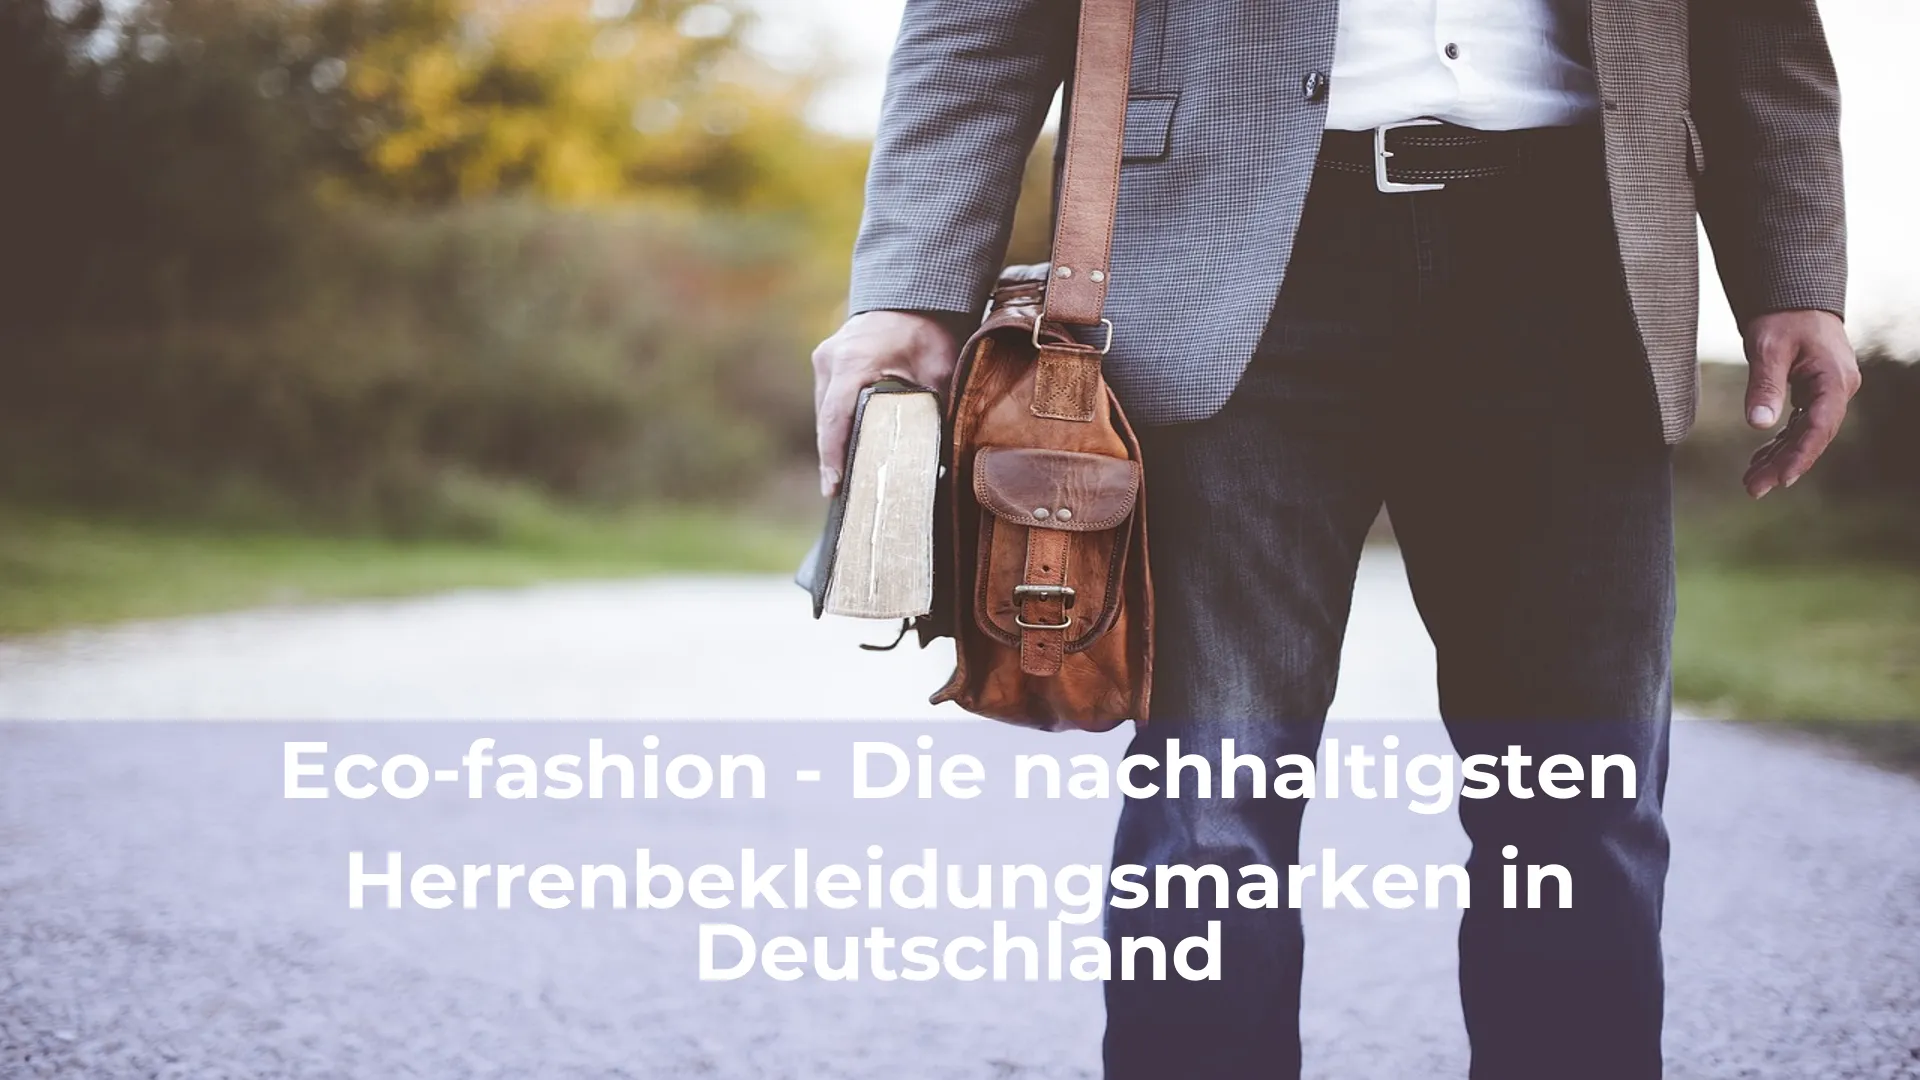 Eco fashion die nachhaltigsten herrenbekleidungsmarken in deutschland